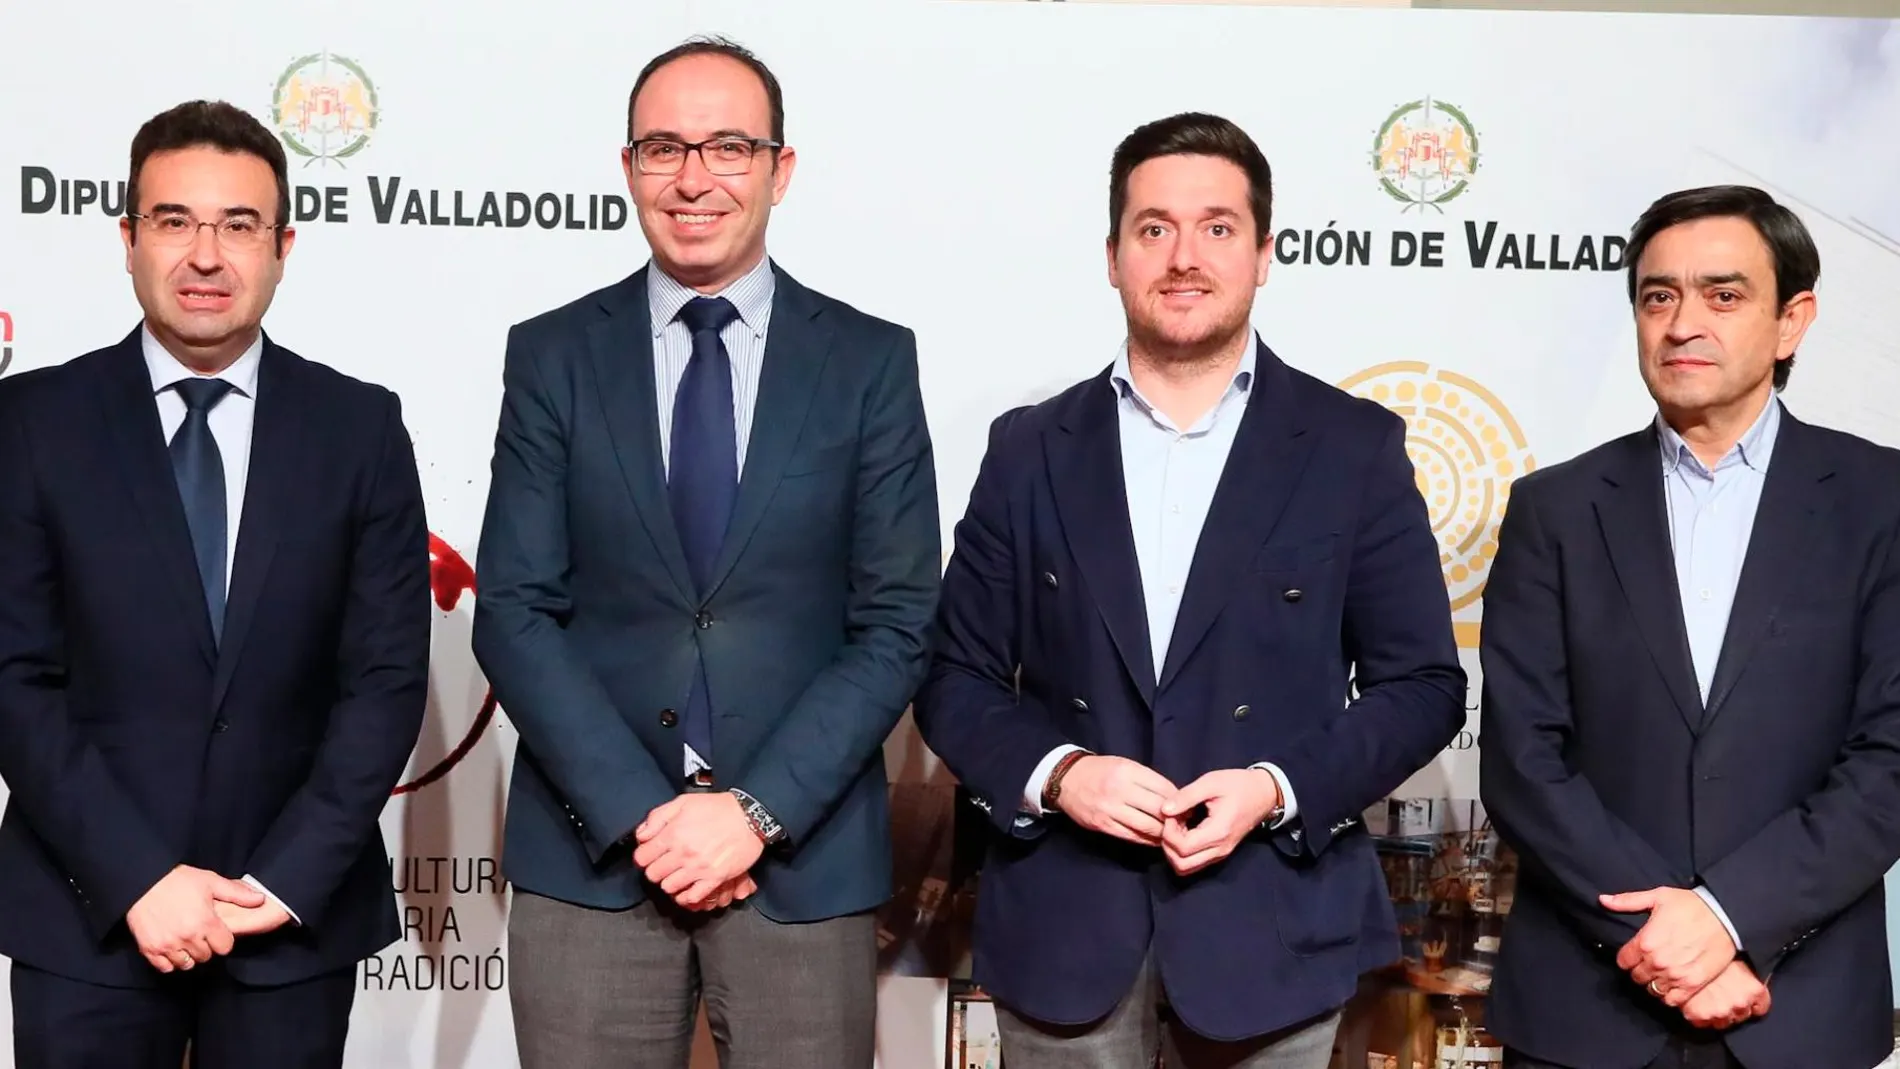 El vicepresidente de la Diputación de Valladolid, Víctor Alonso, presenta las celebraciones, junto al diputado Agapito Hernández, y los alcaldes Roberto Díez y Alberto Magdaleno